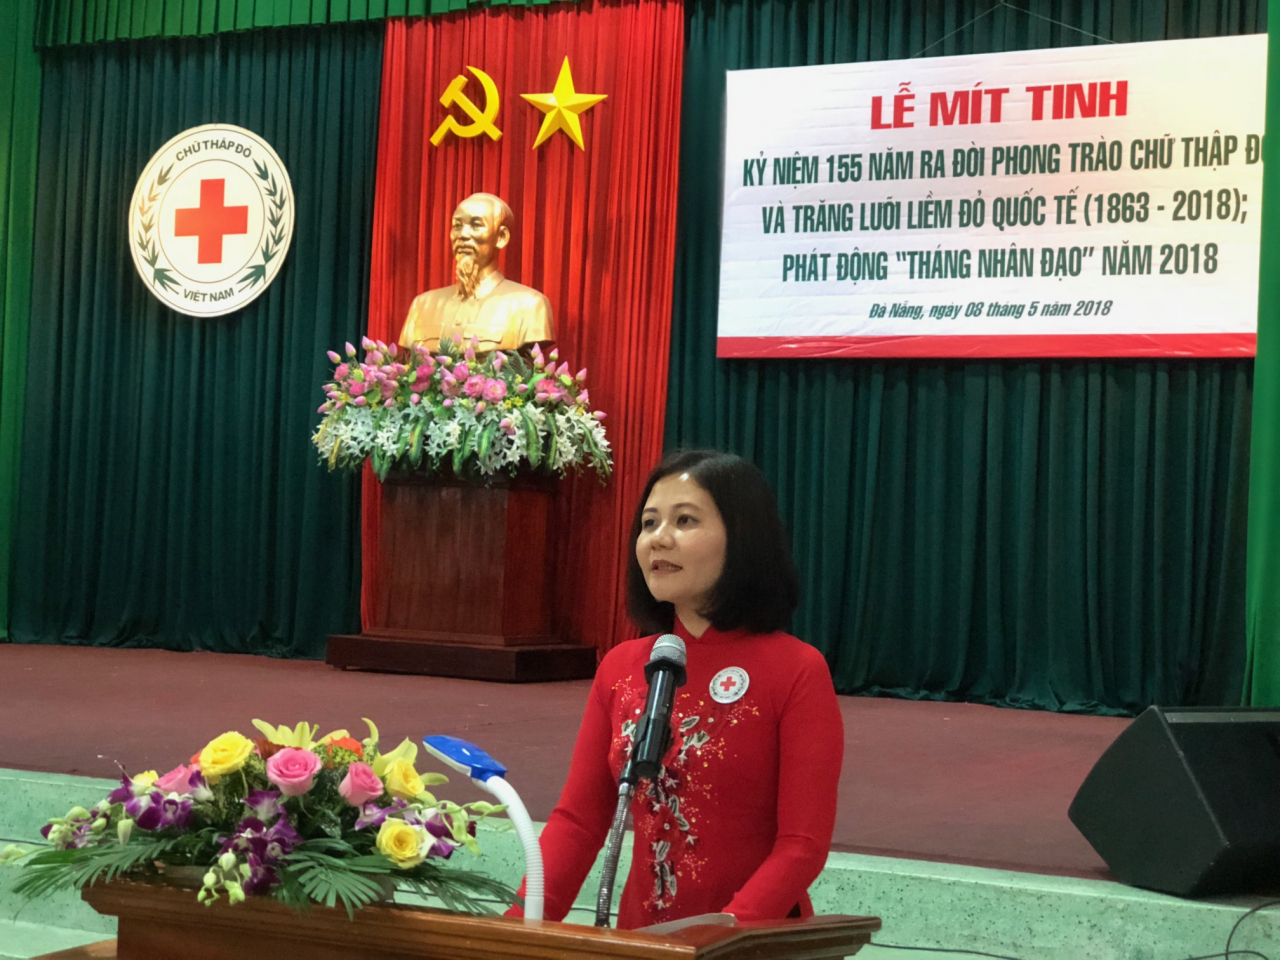 Phát biểu tại buổi lễ, bà Trần Thị Hồng An-Phó Chủ tịch TƯ Hội CTĐ Việt Nam